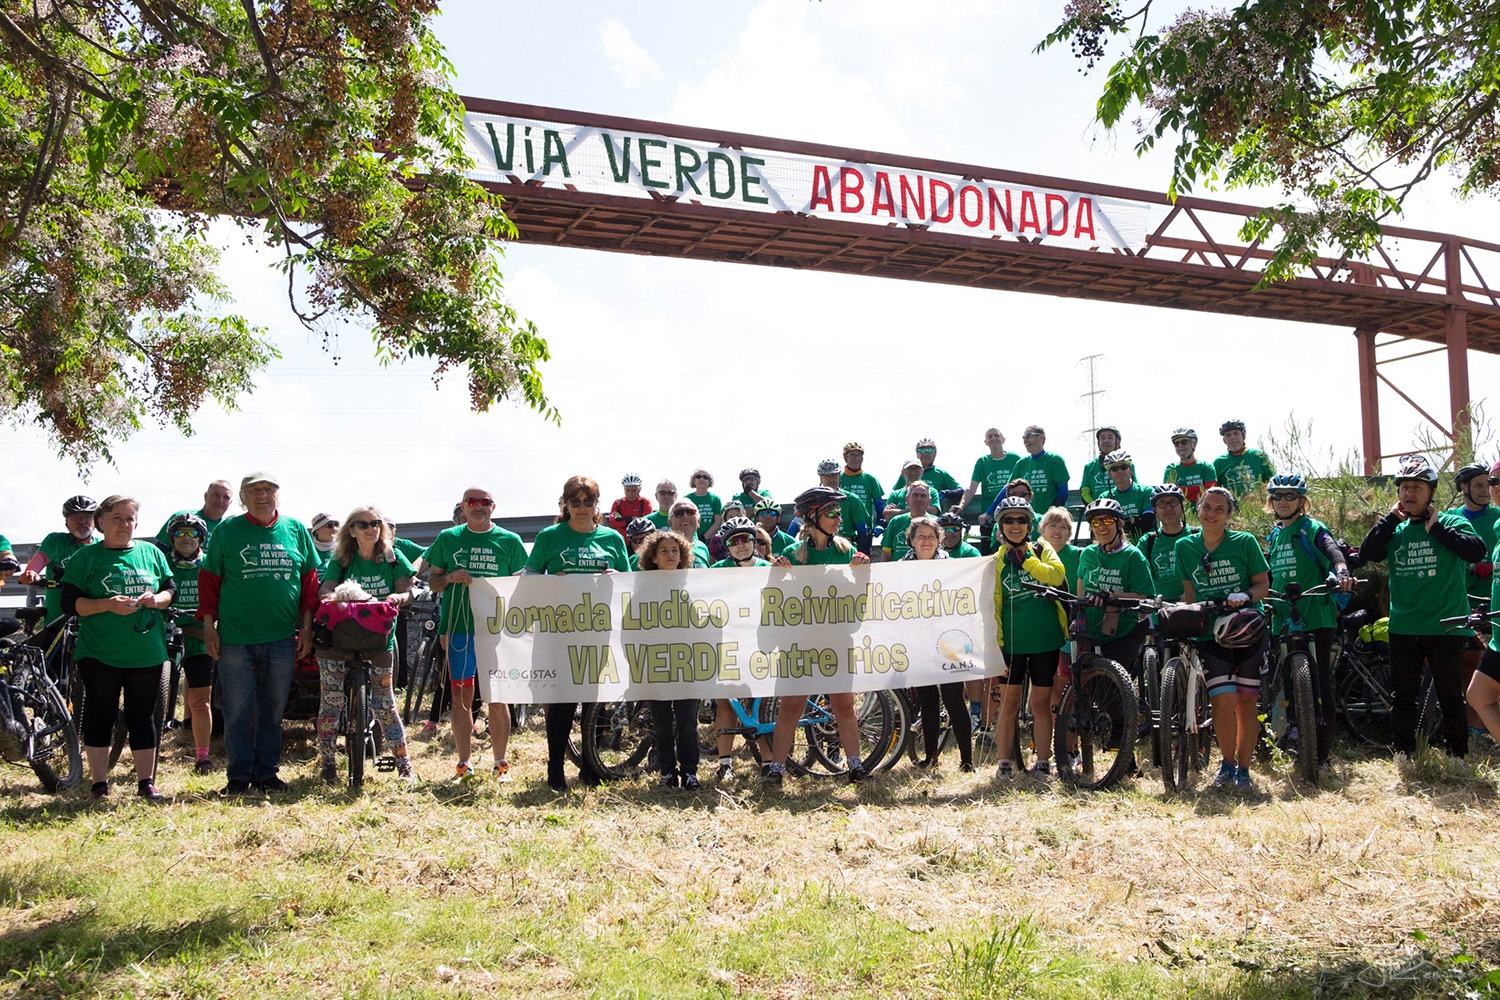 9ª Marcha Lúdico-Reivindicativa Vía Verde Entre Ríos